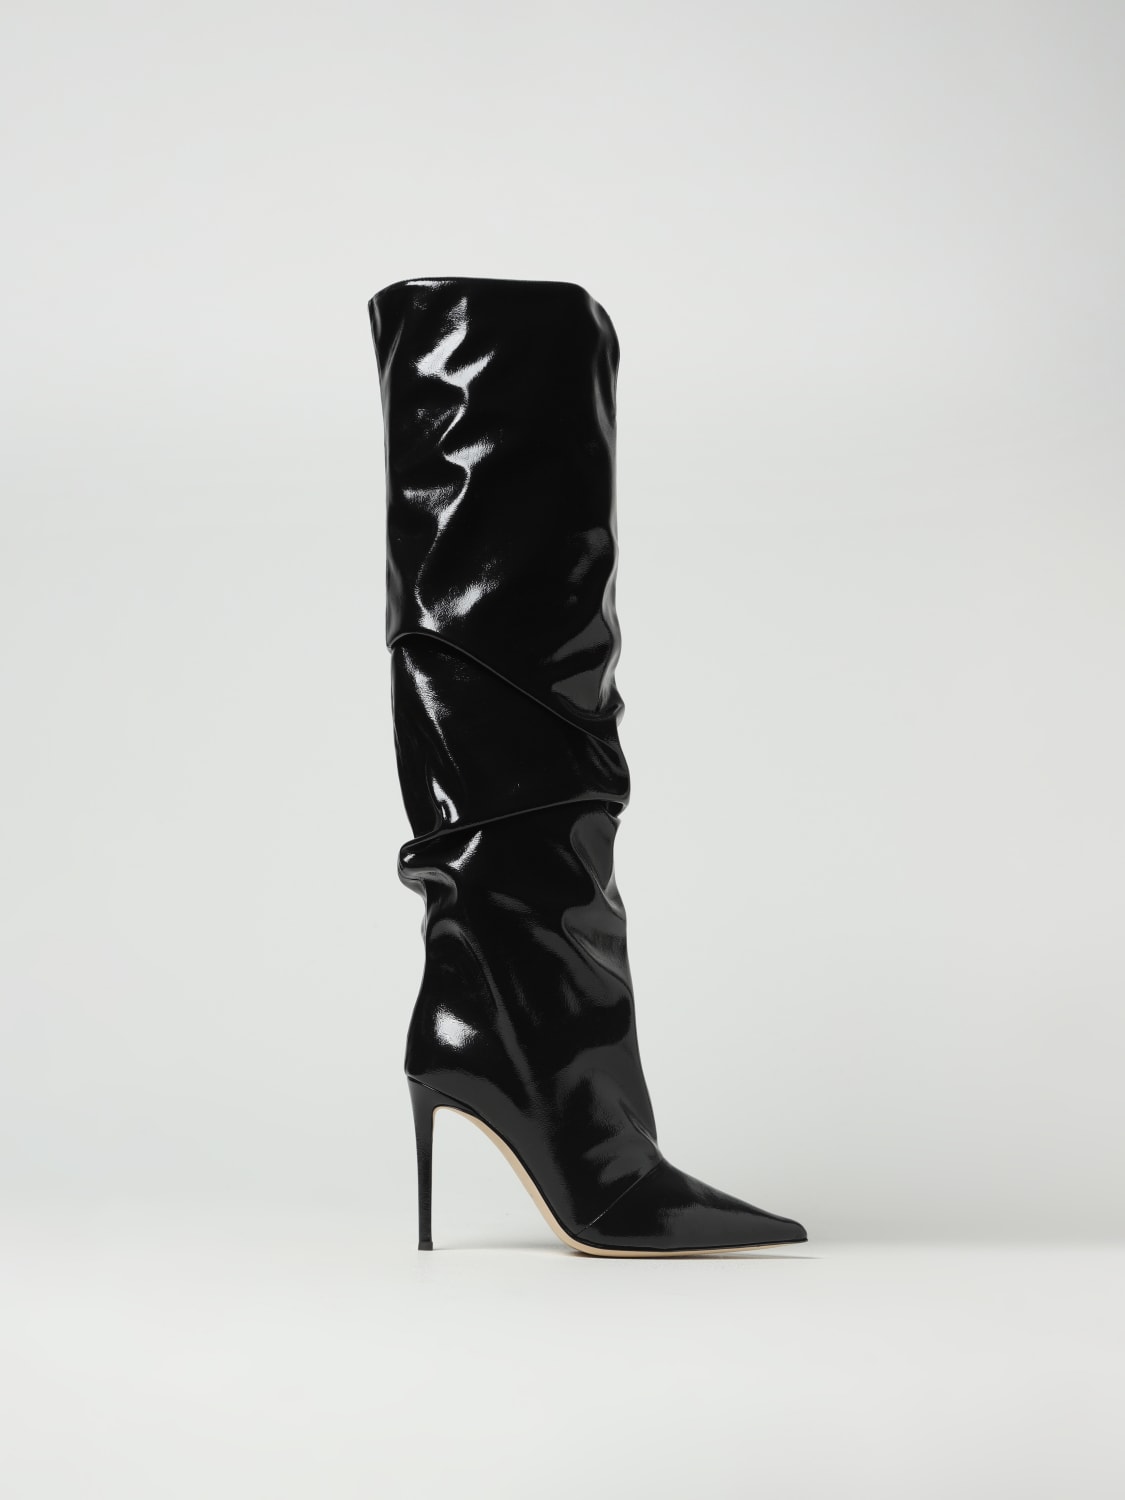 GIUSEPPE ZANOTTI: for woman | Zanotti boots I280016 online at GIGLIO.COM